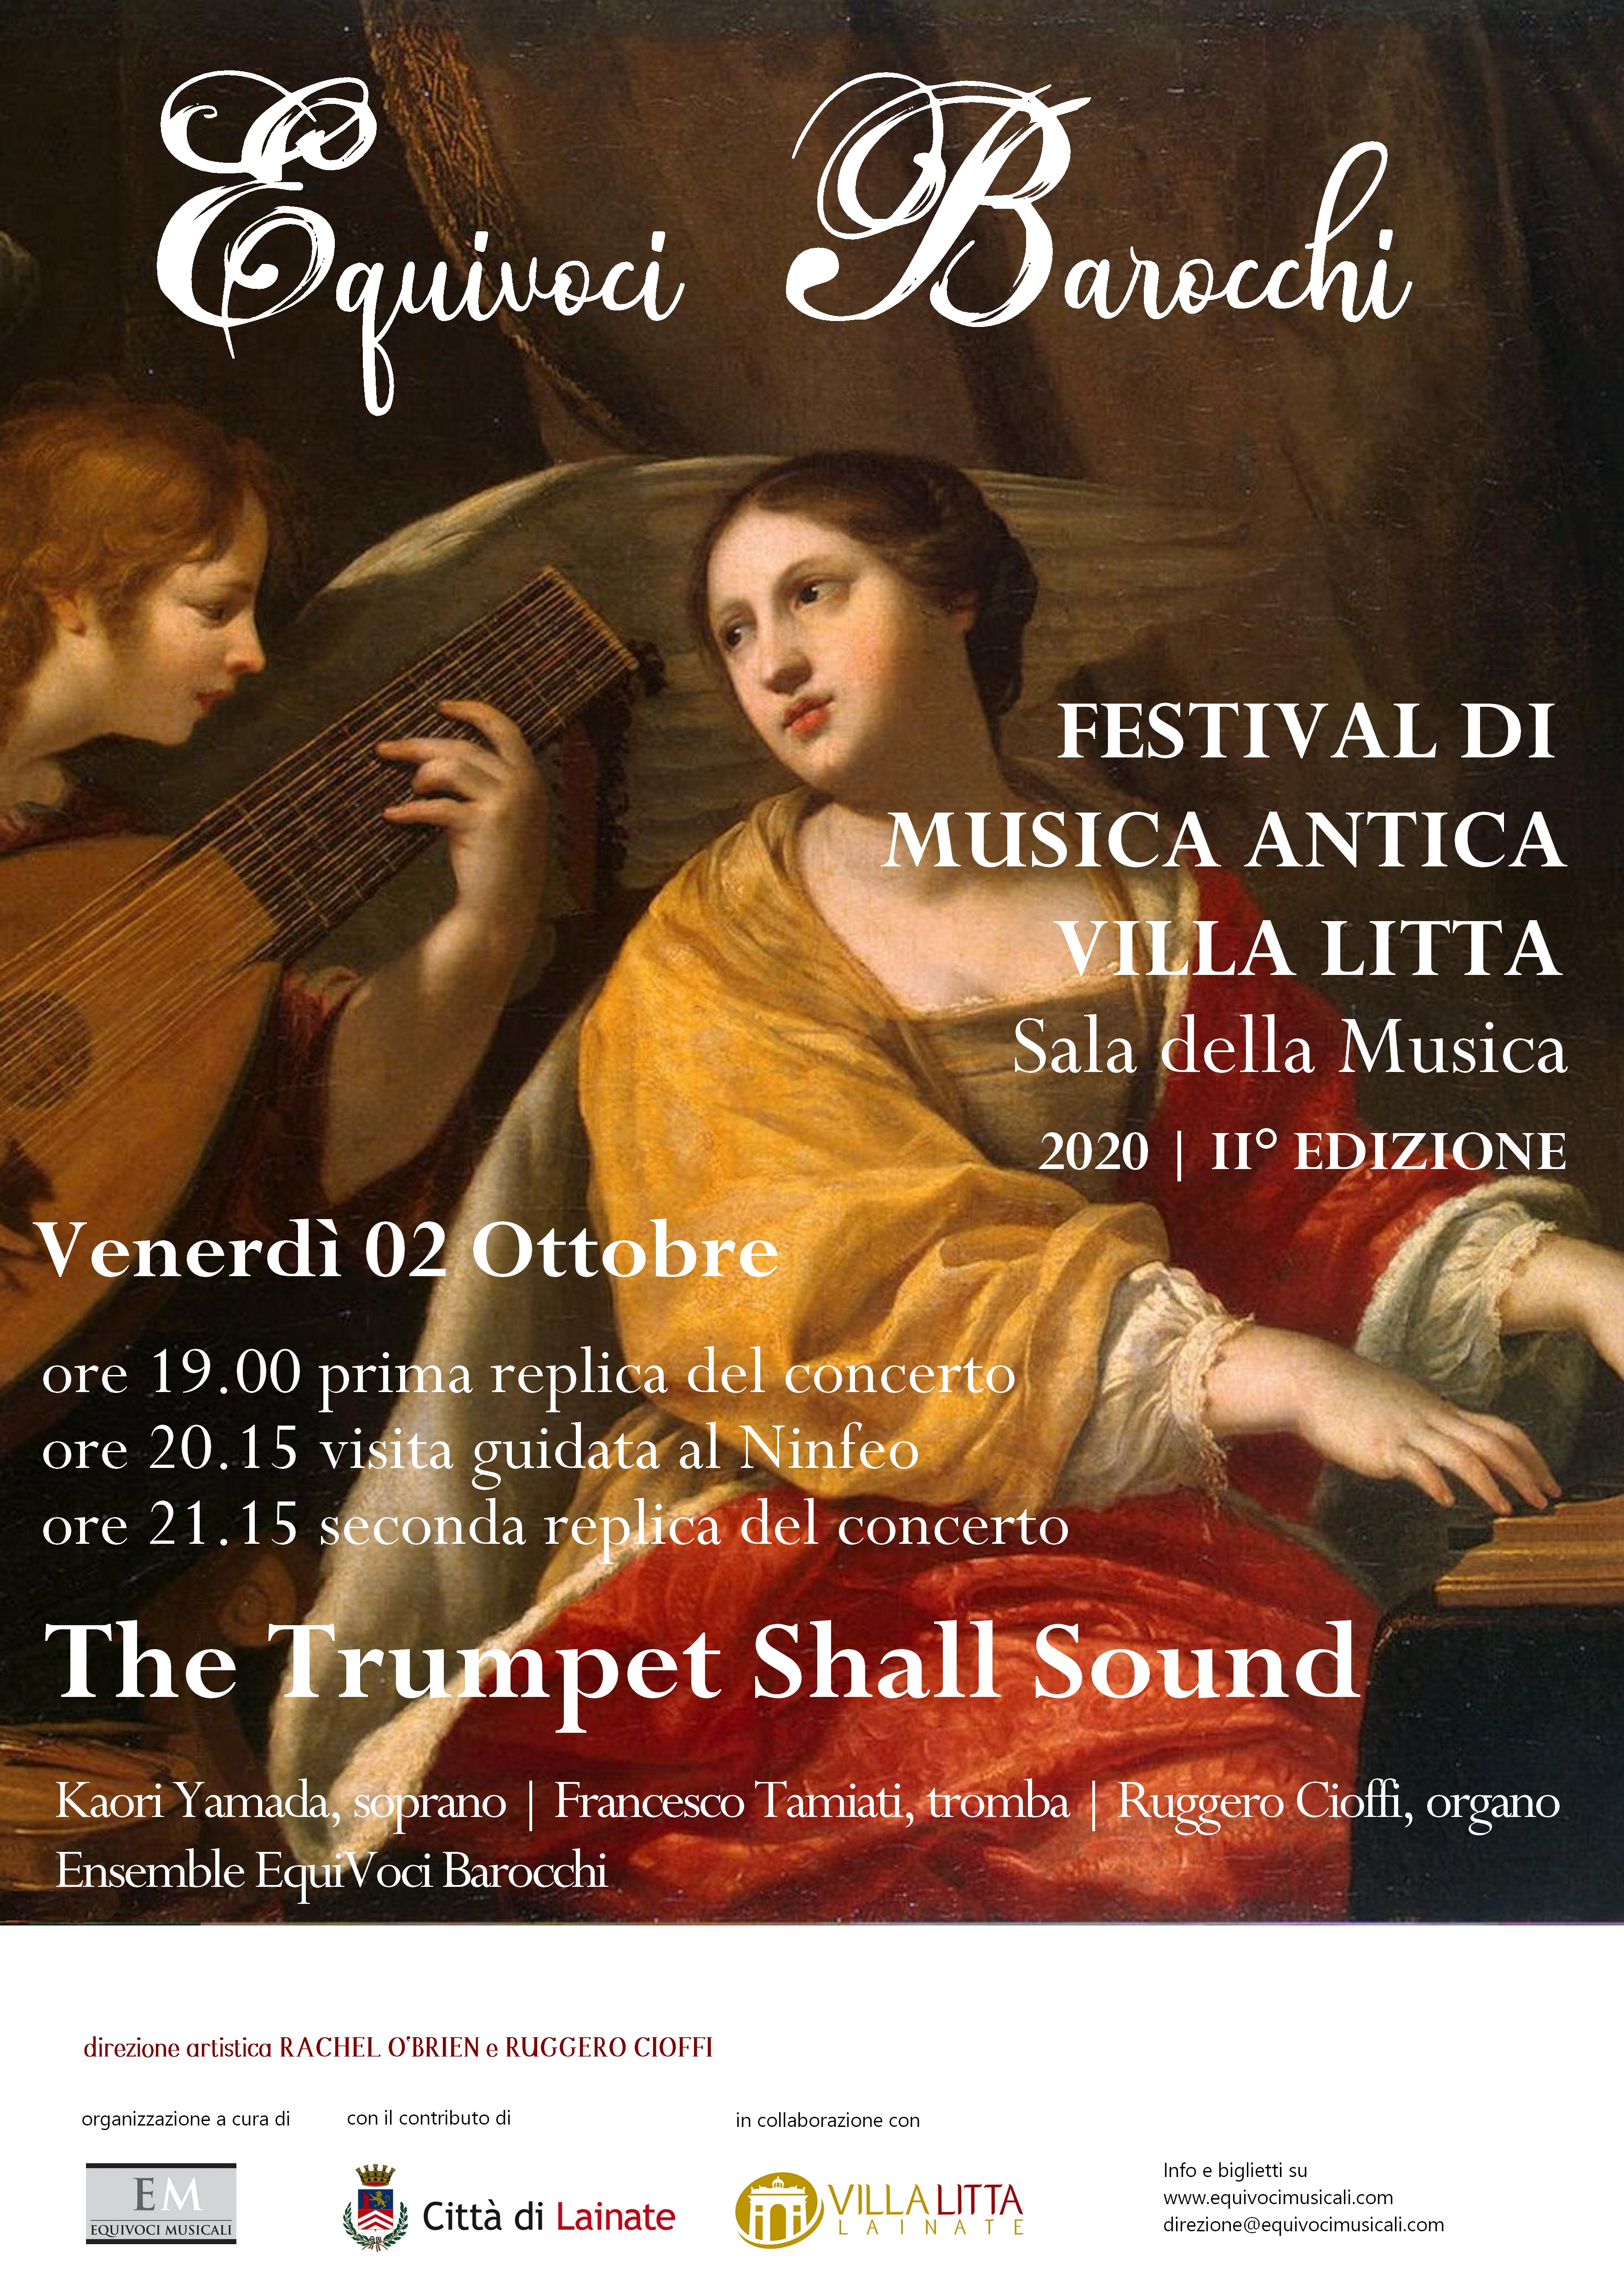 Festival di Musica Antica: Equivoci Barocchi